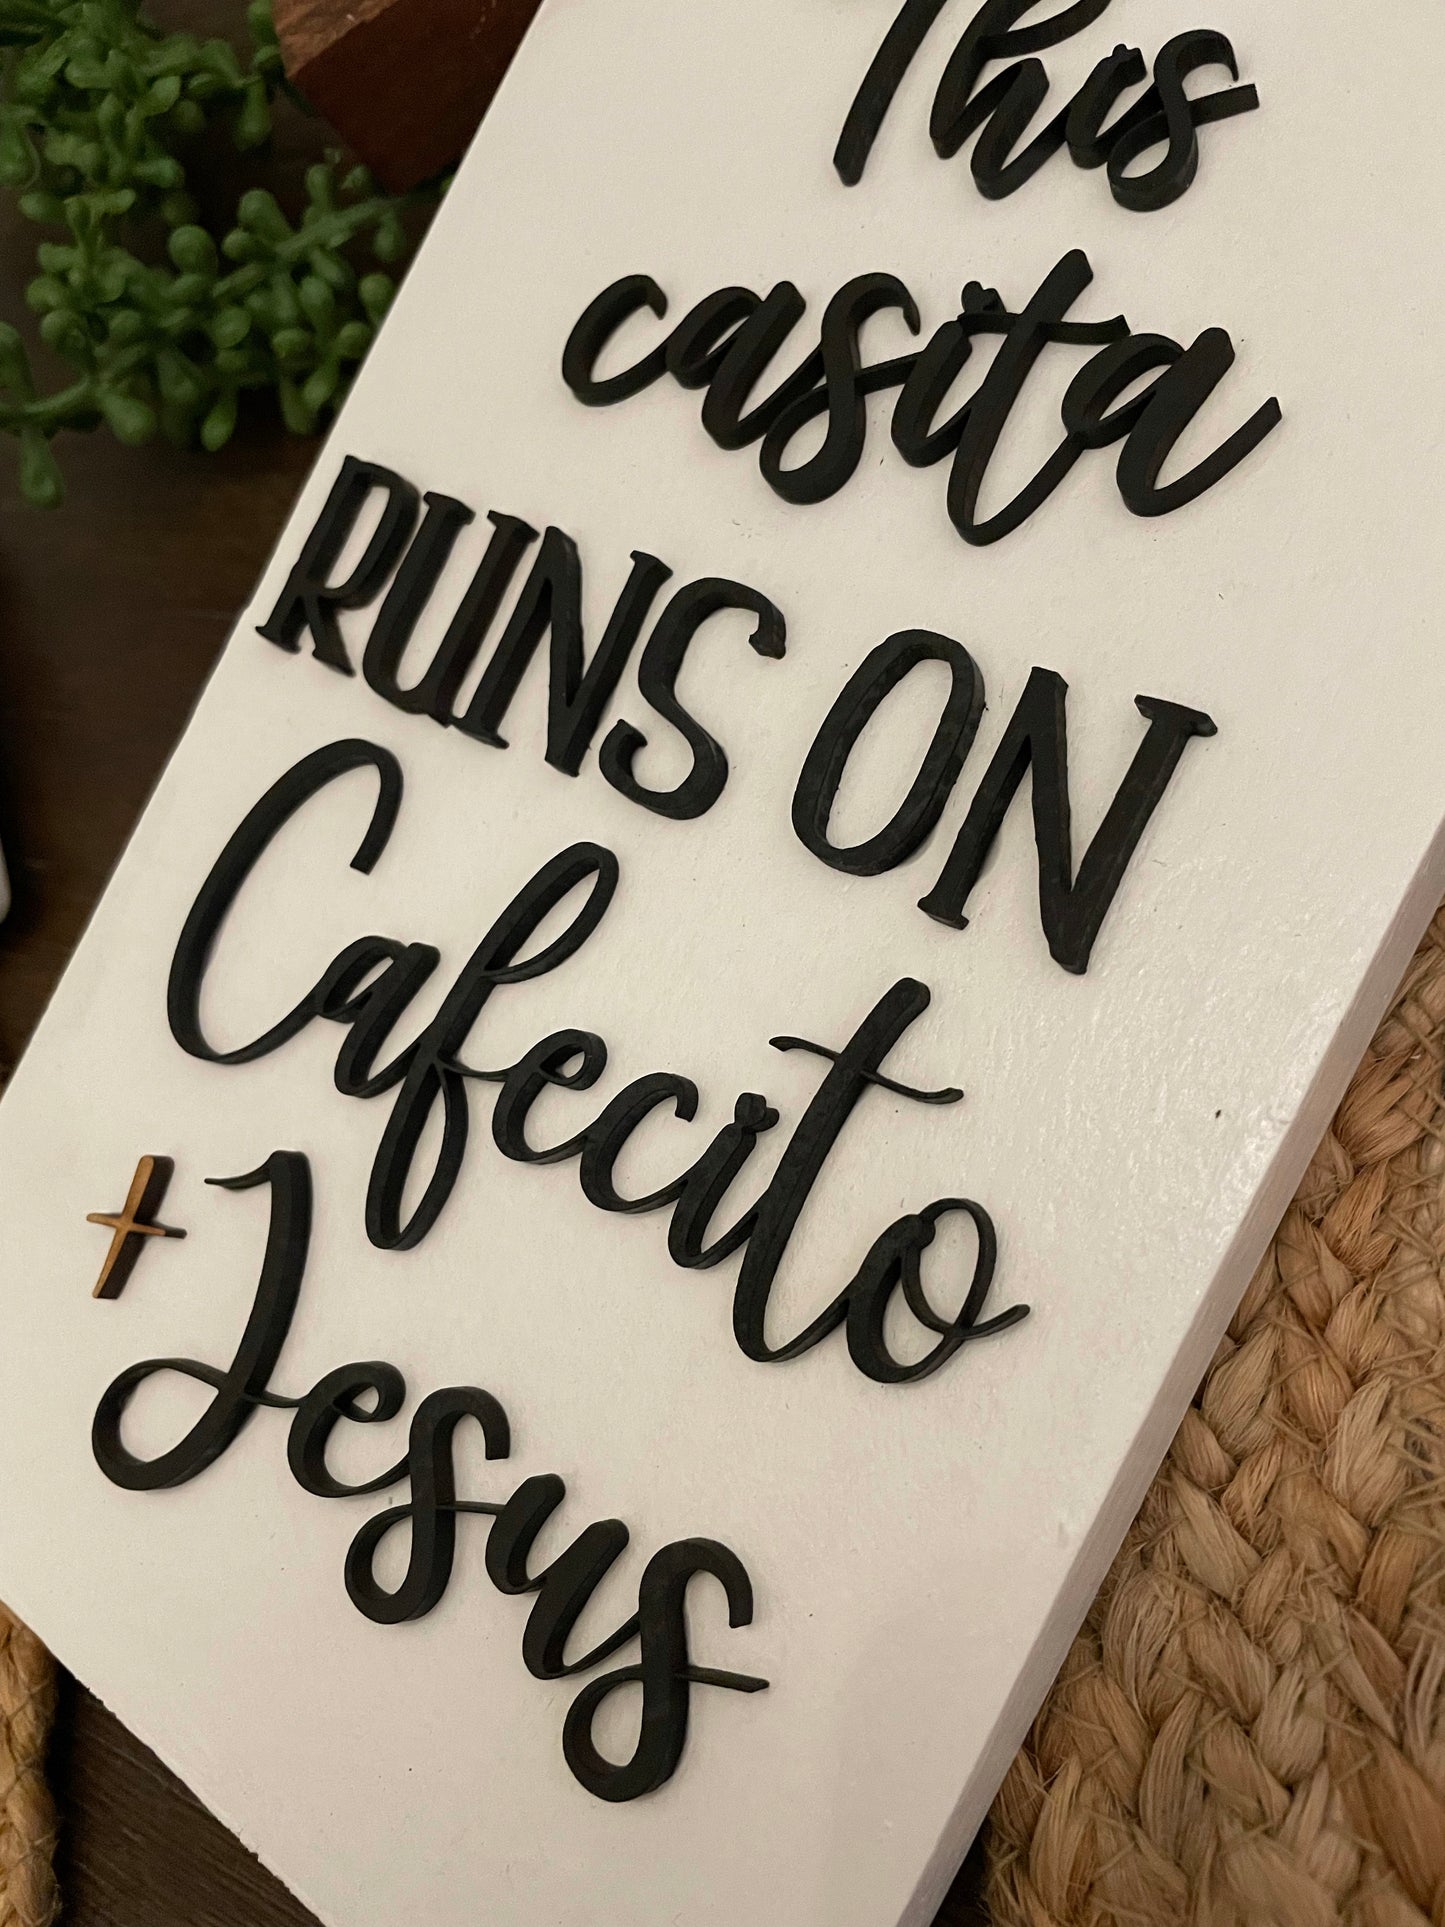 Running on Cafecito + Jesus